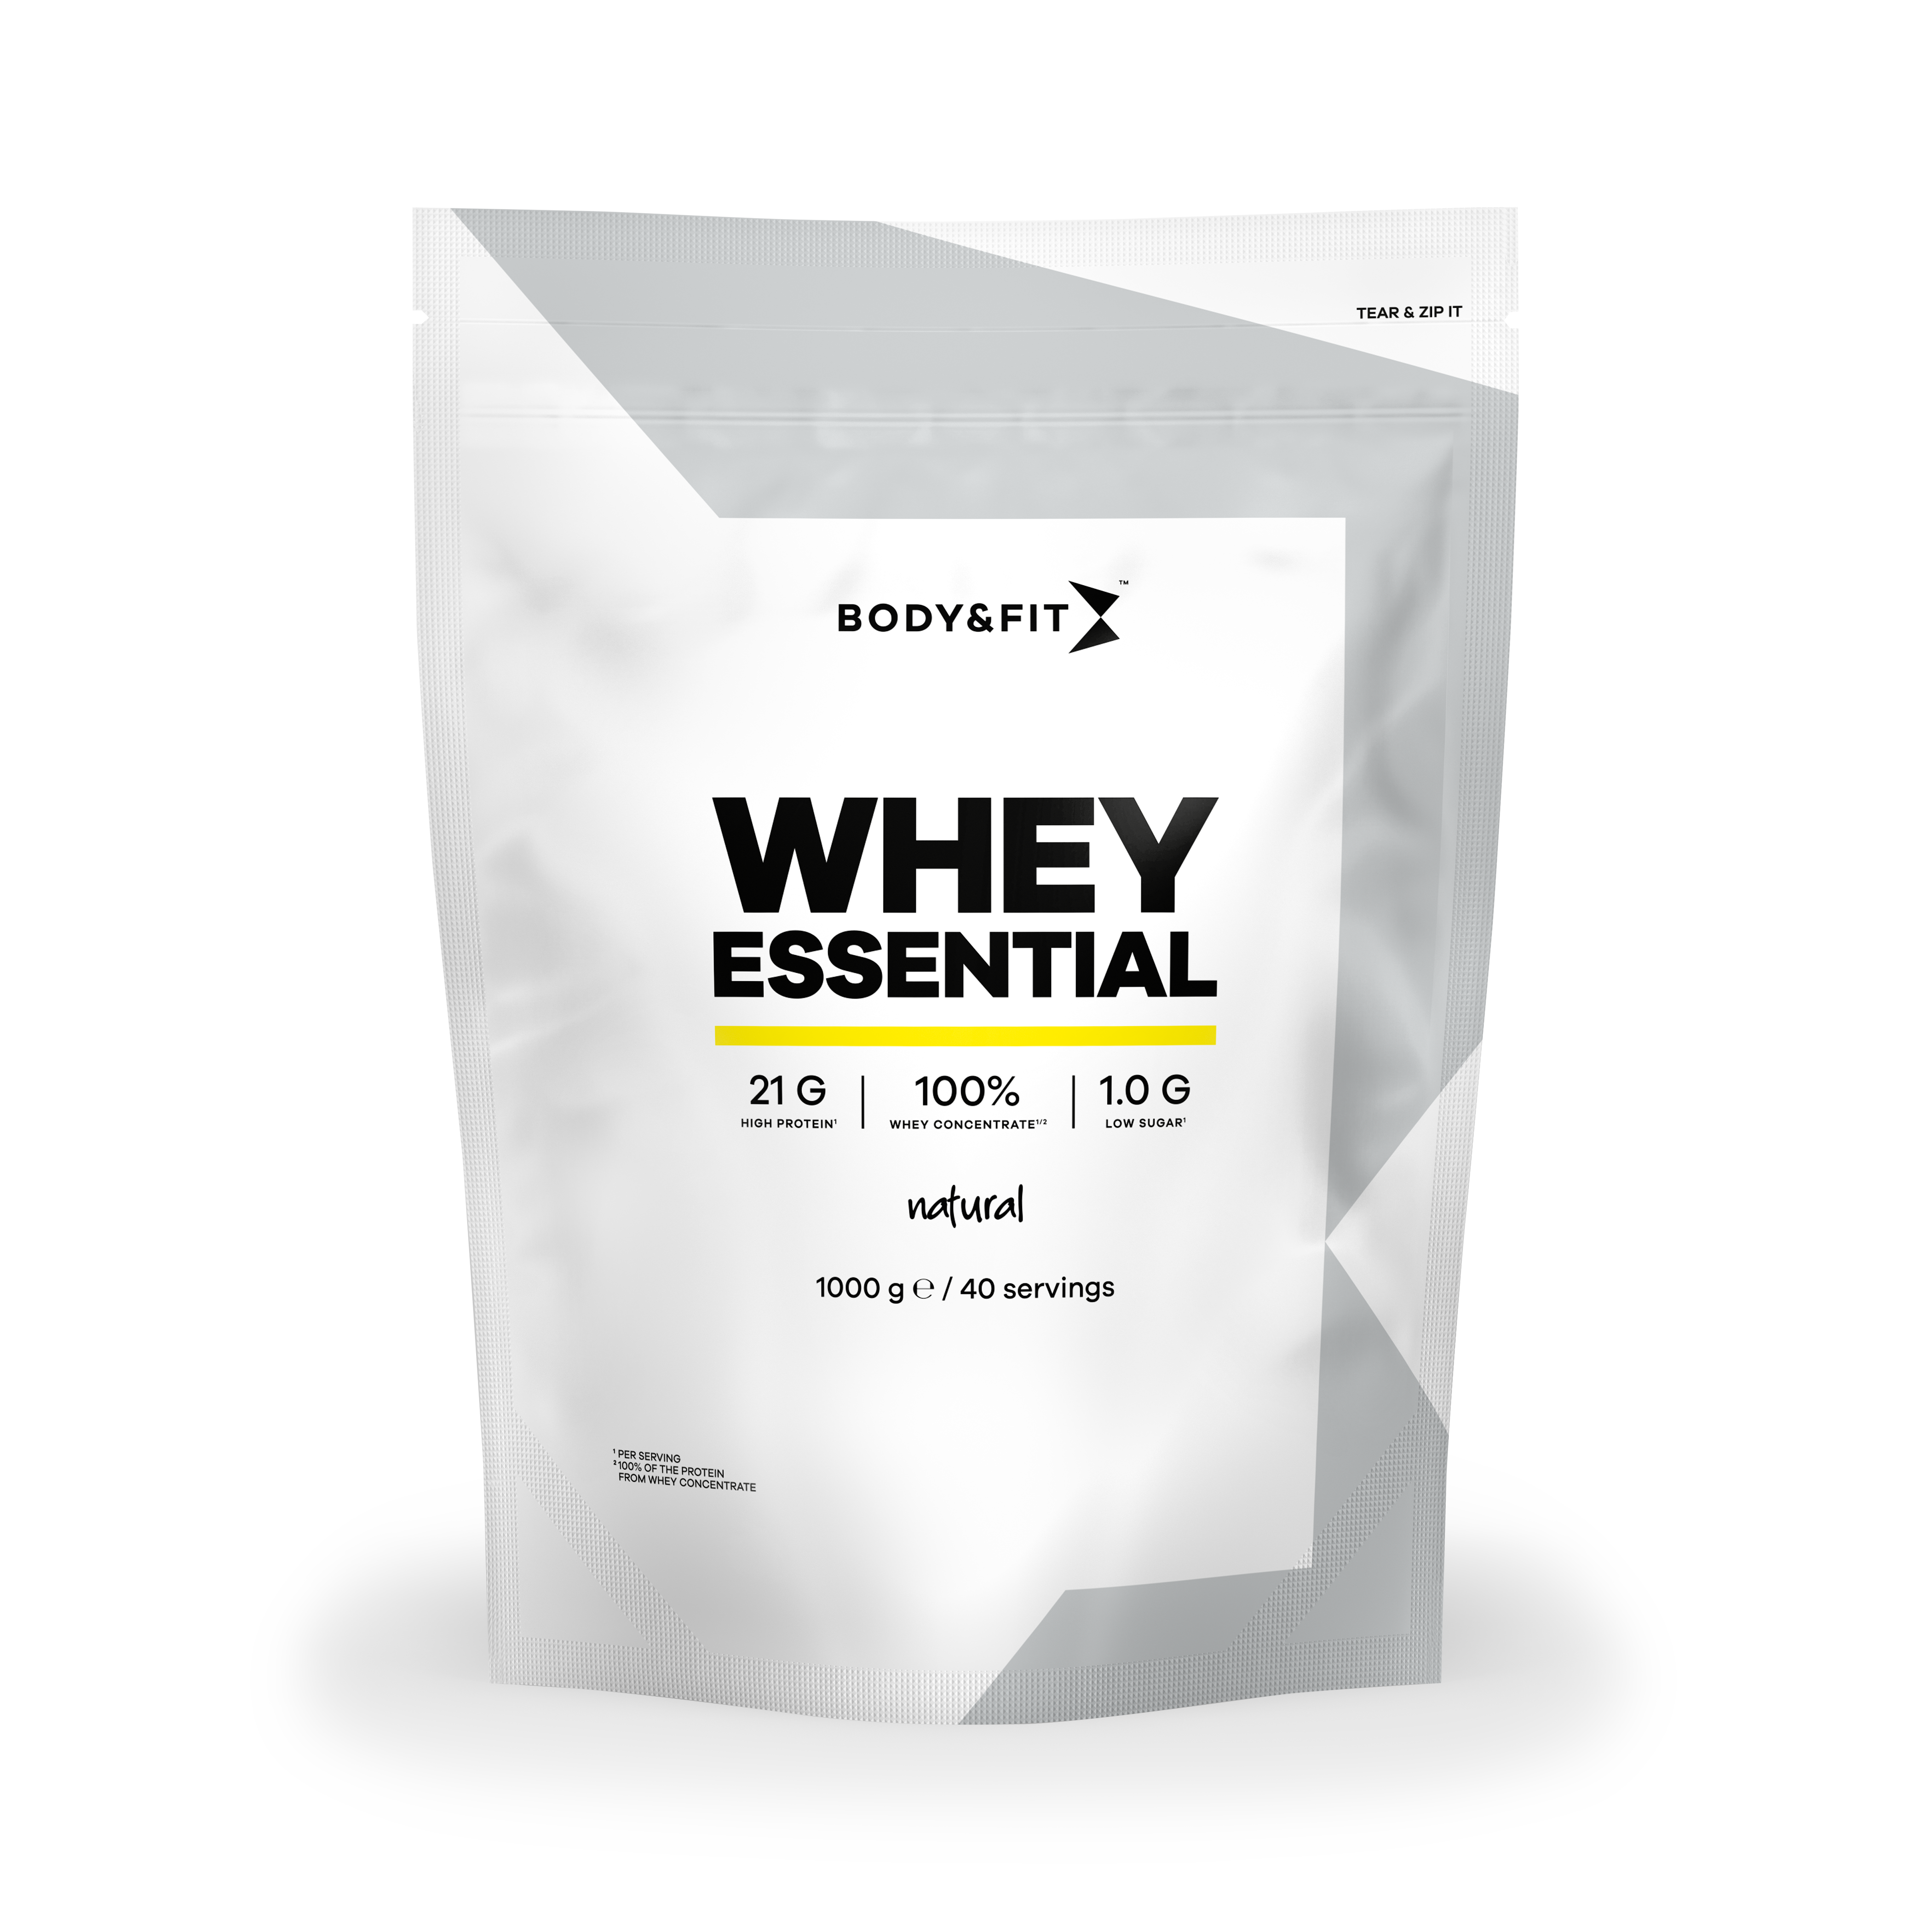 Body & Fit Whey Essential - Eiwitshake Zonder Smaak - Proteine Poeder - Whey Protein - 40 shakes (1000 gram)